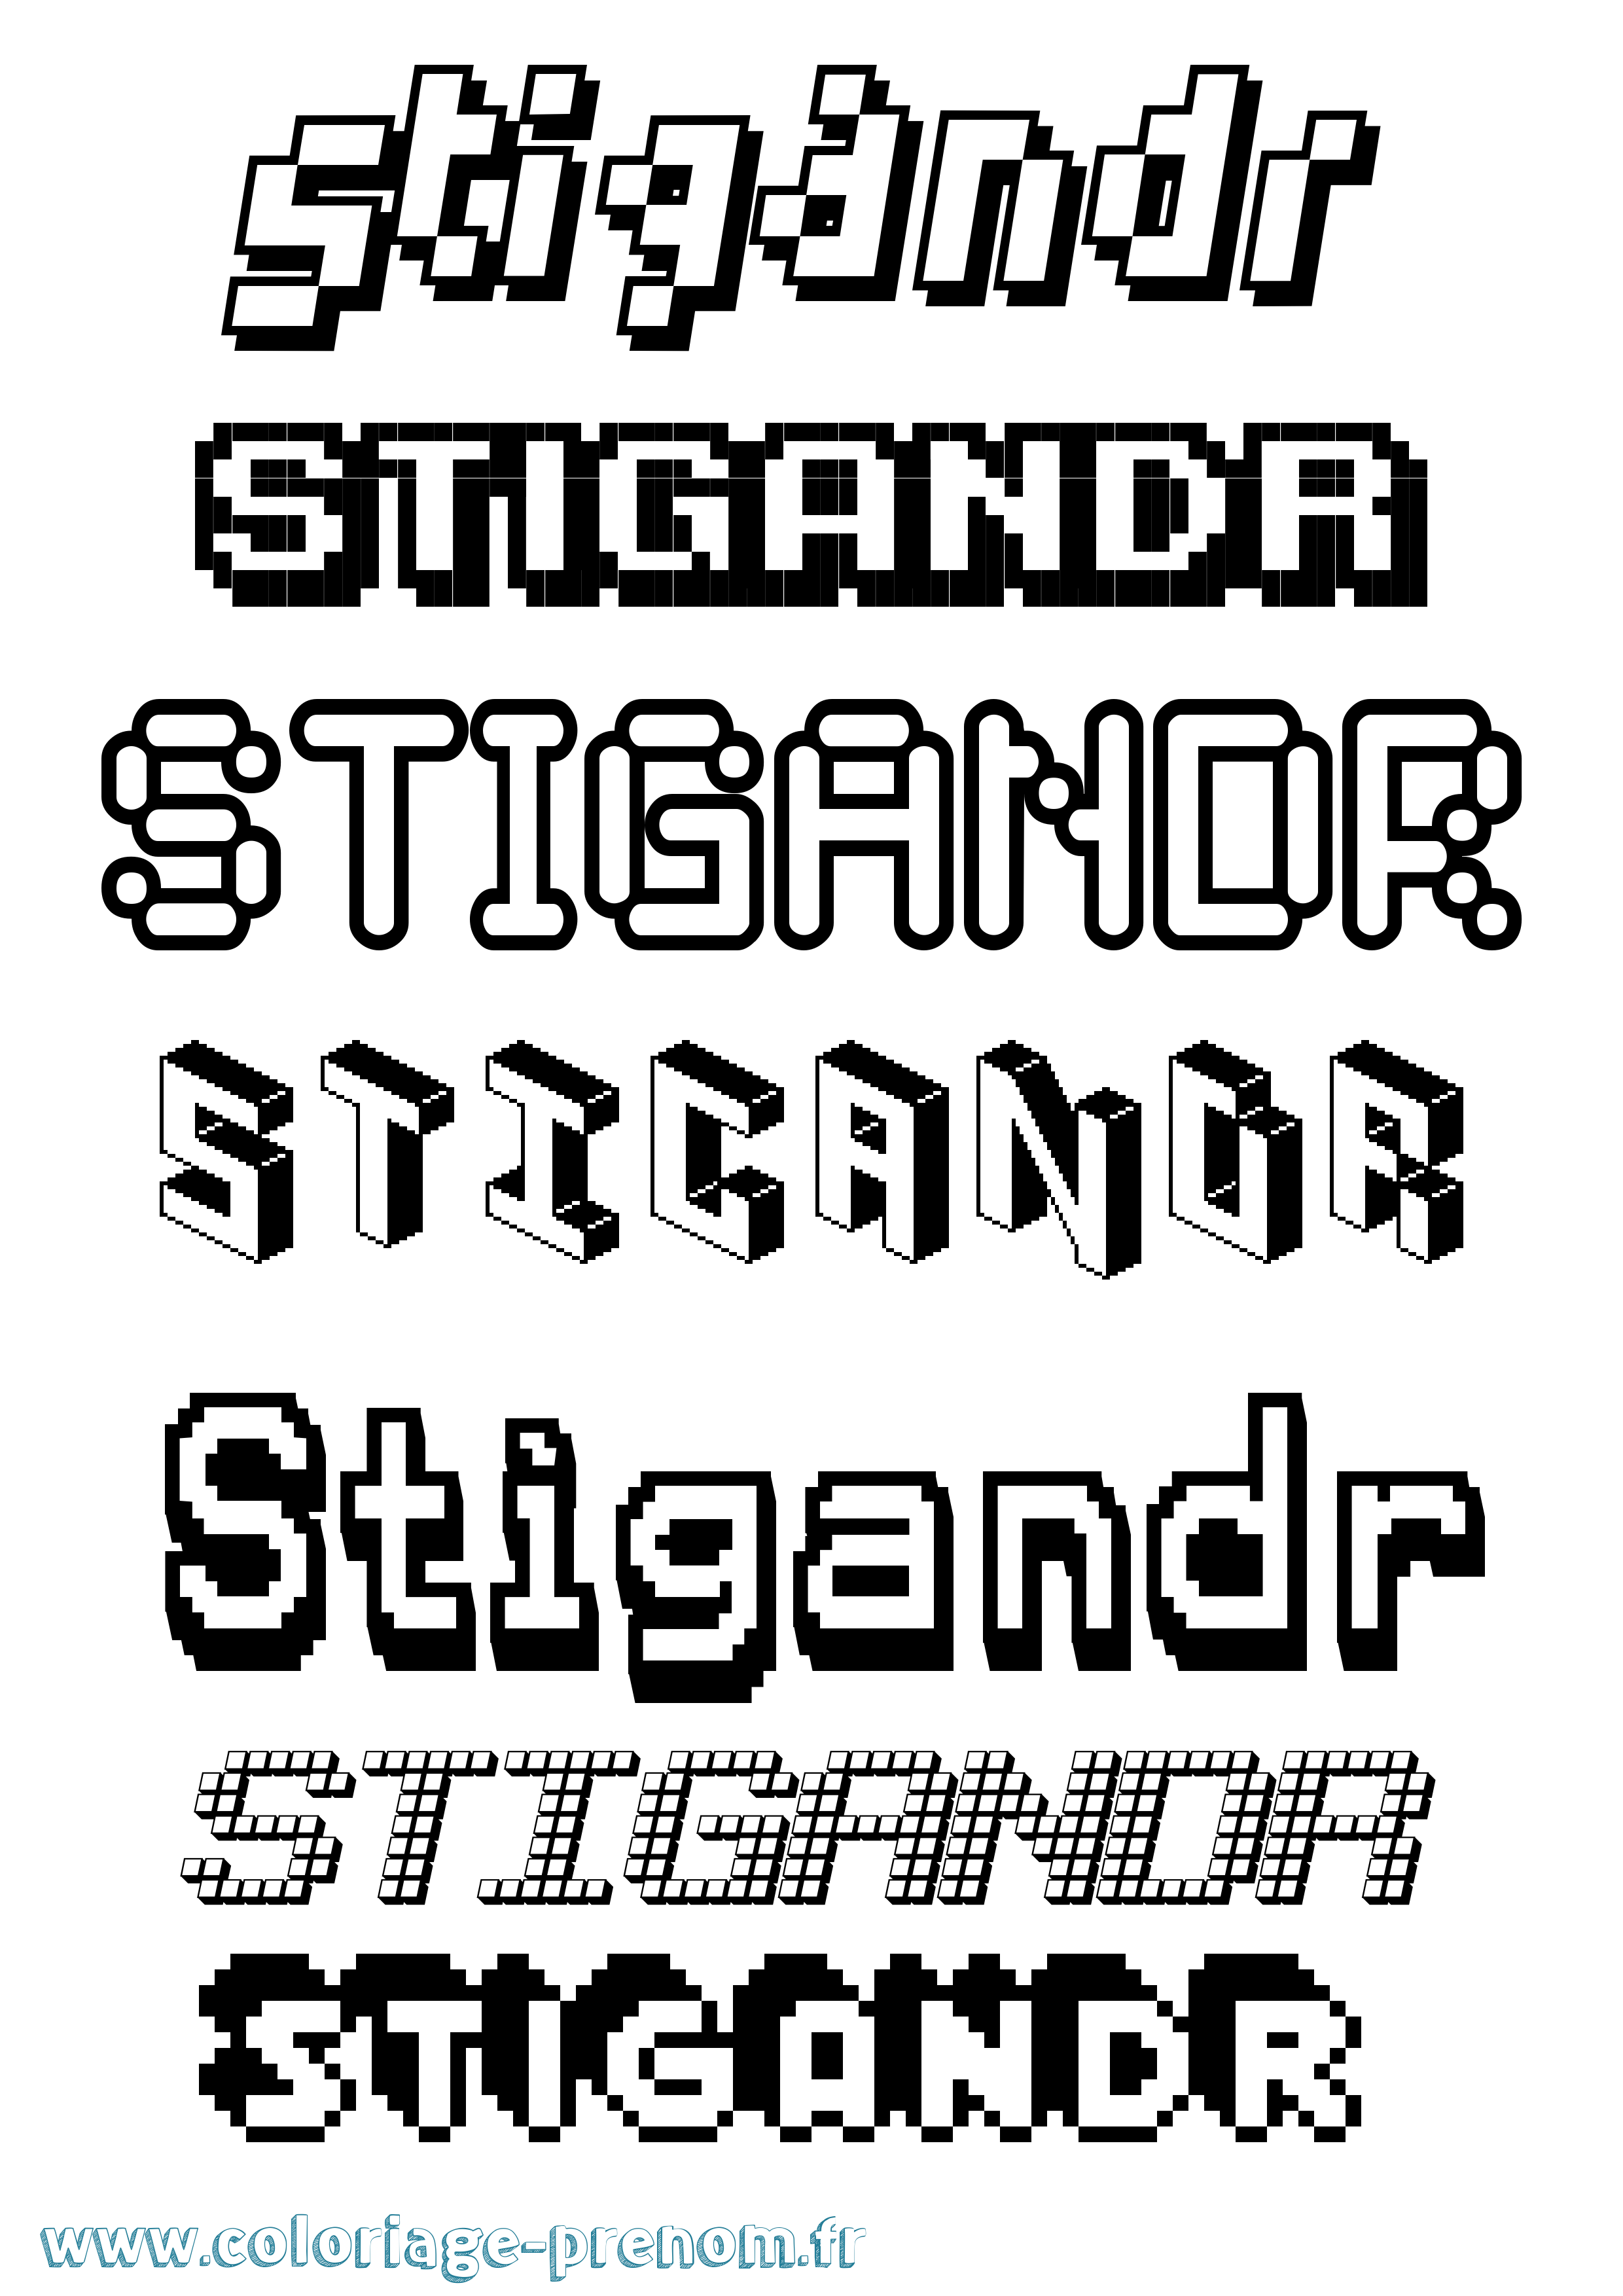 Coloriage prénom Stígandr Pixel